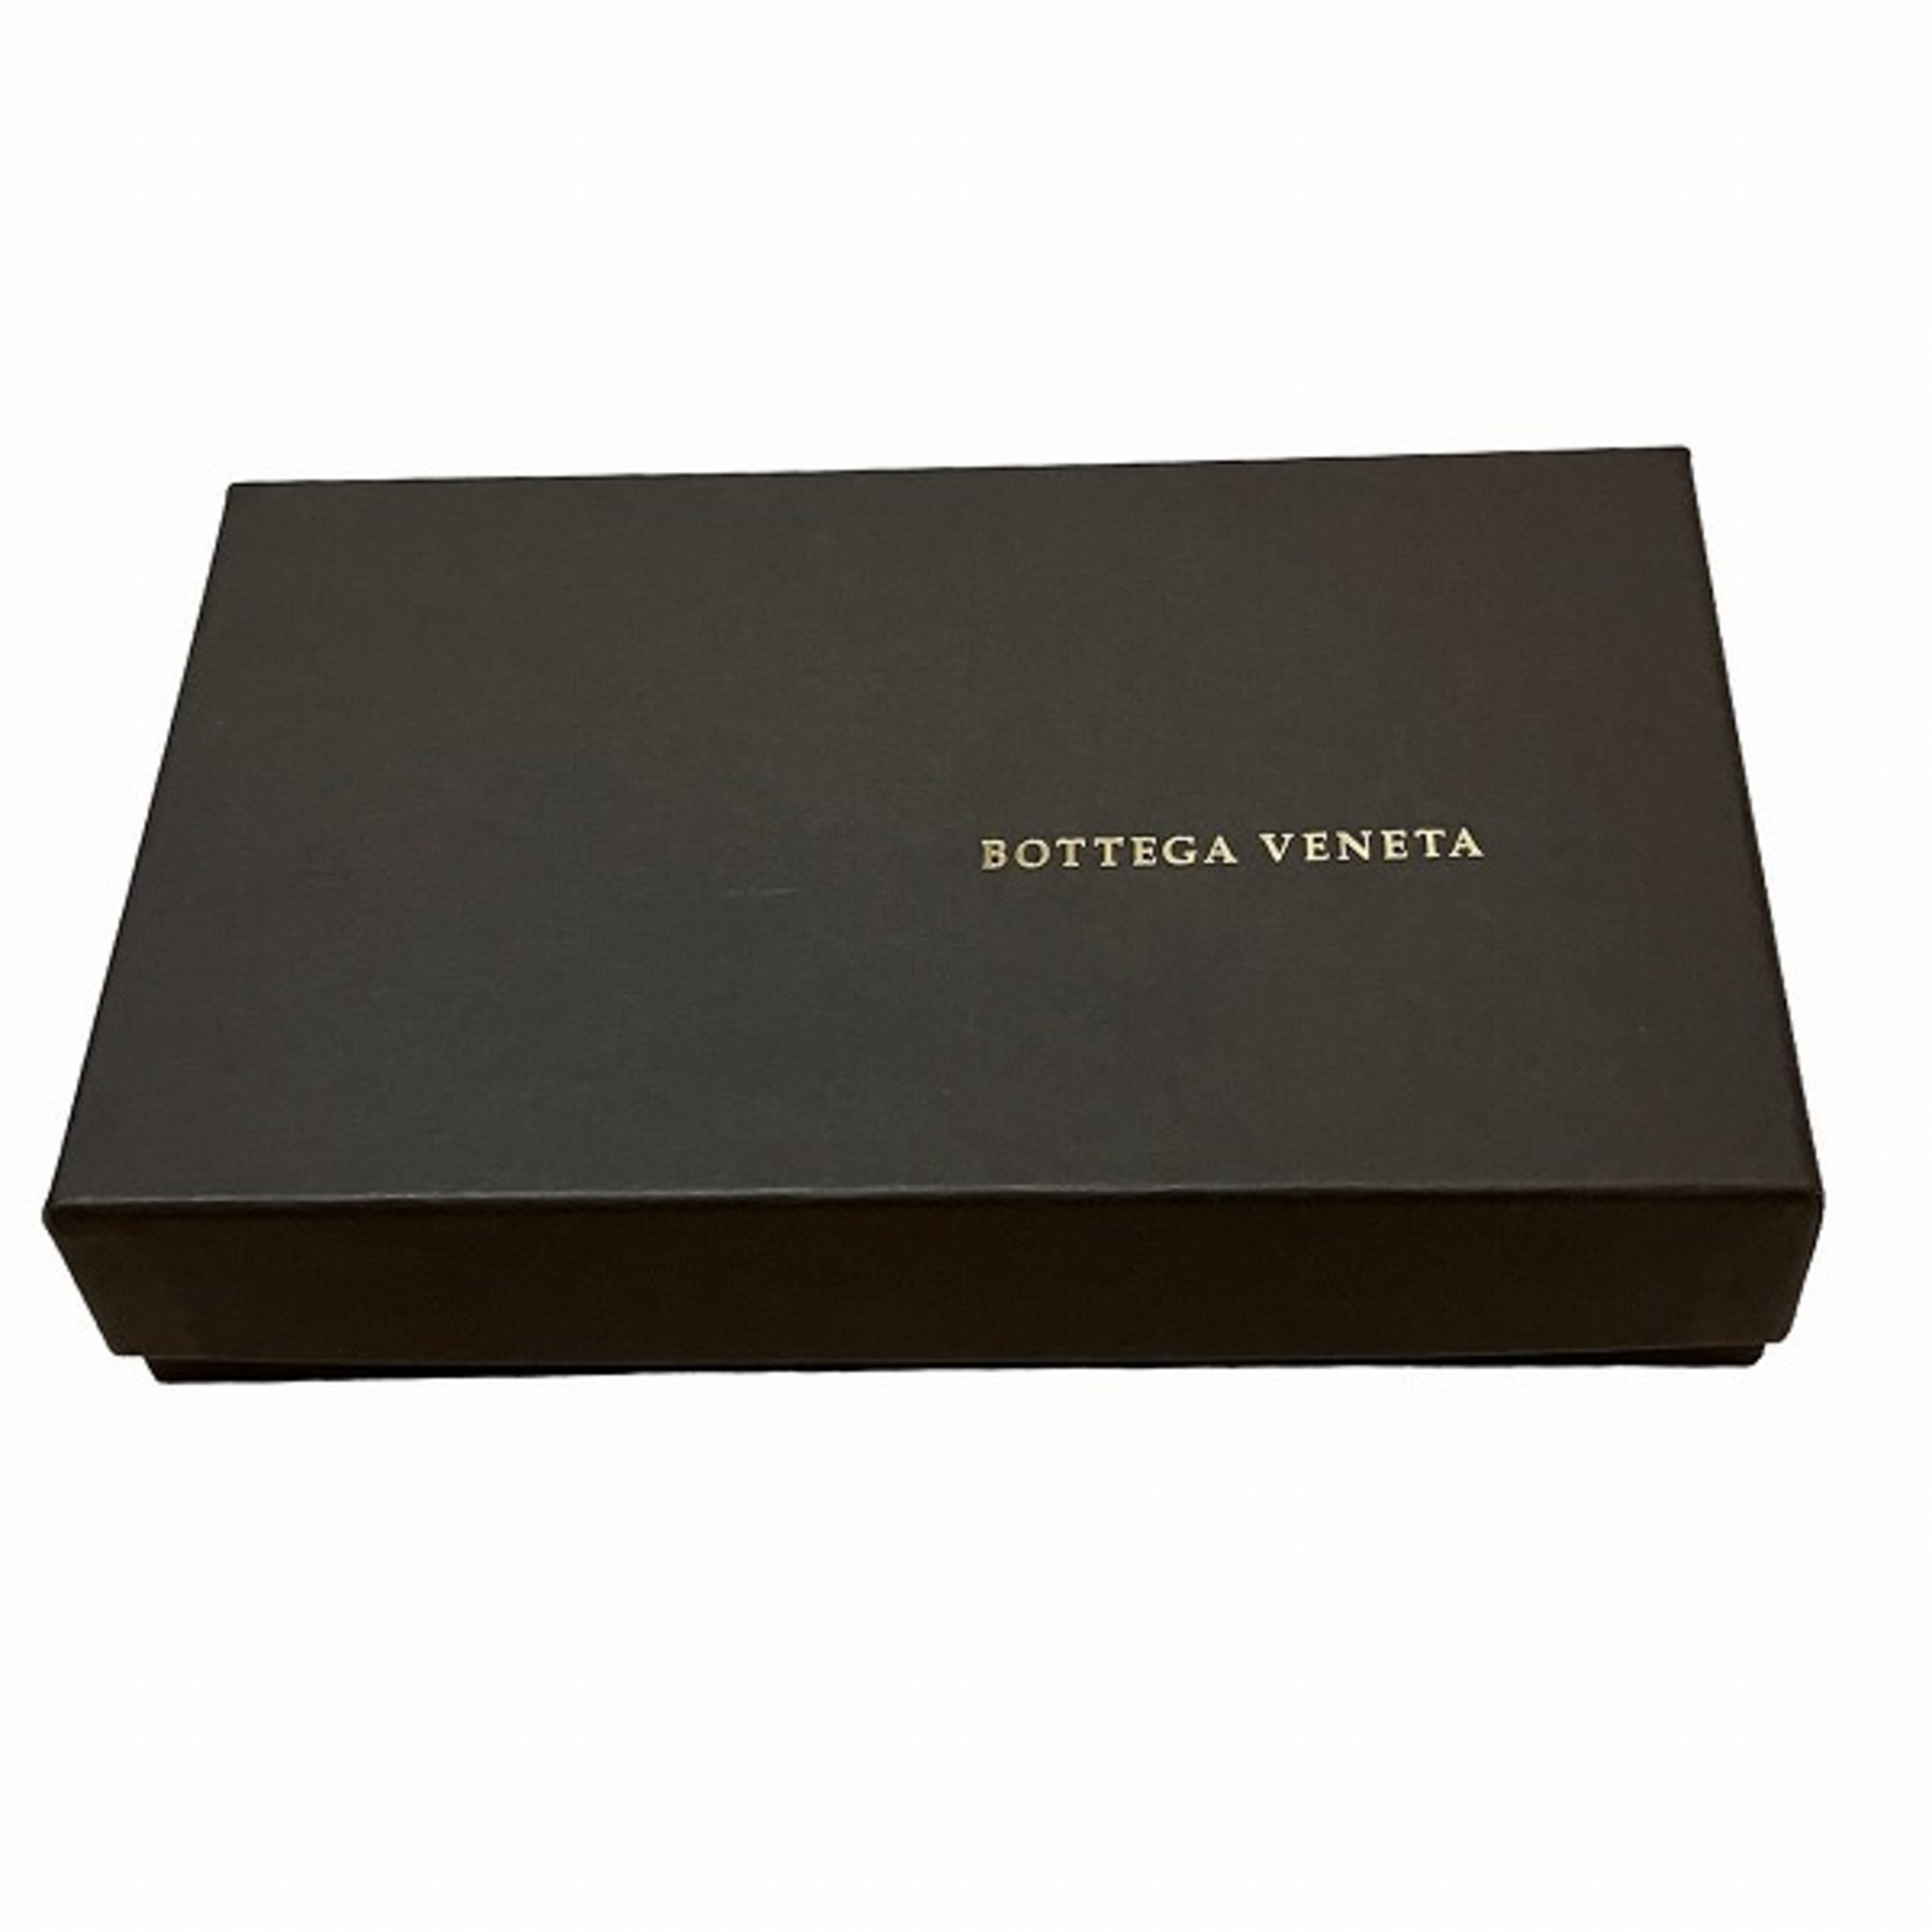 Bottega Veneta Intrecciato 150509 Wallet Long Women's